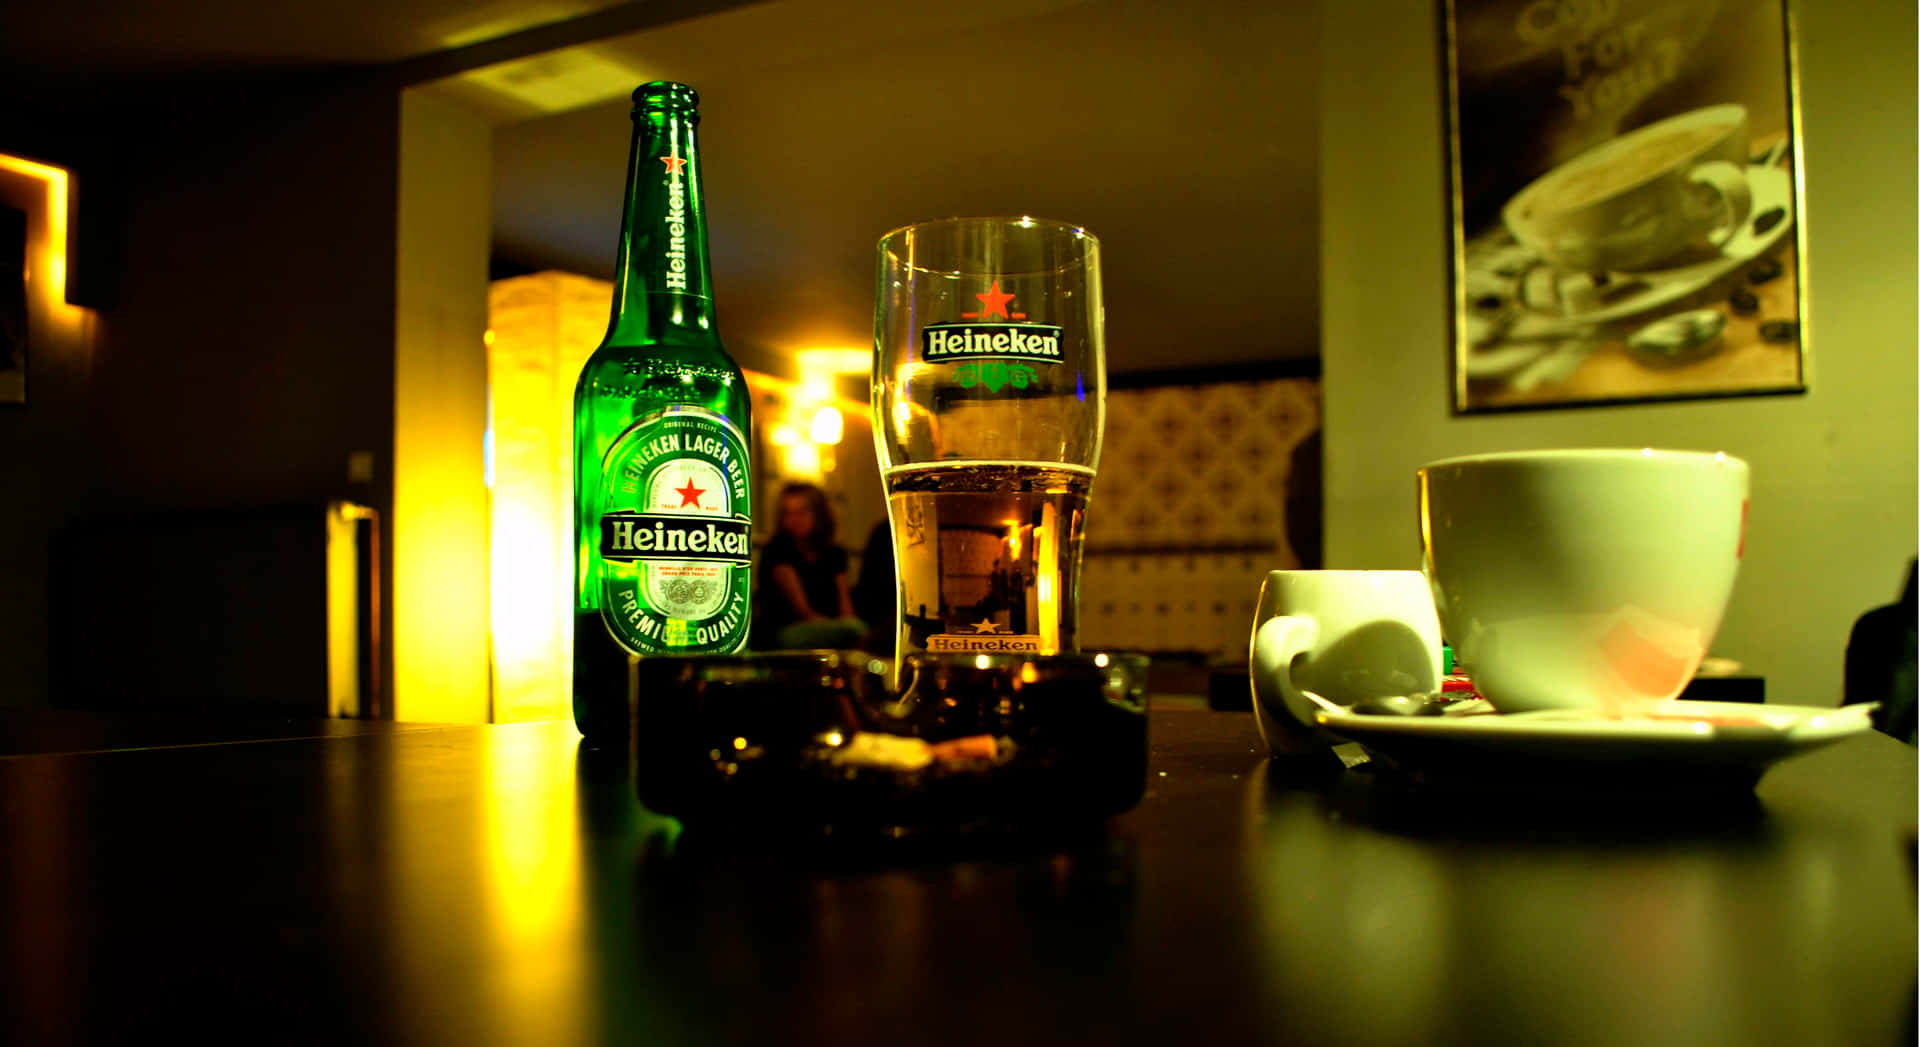 Heineken3875 X 2114 Baggrund.